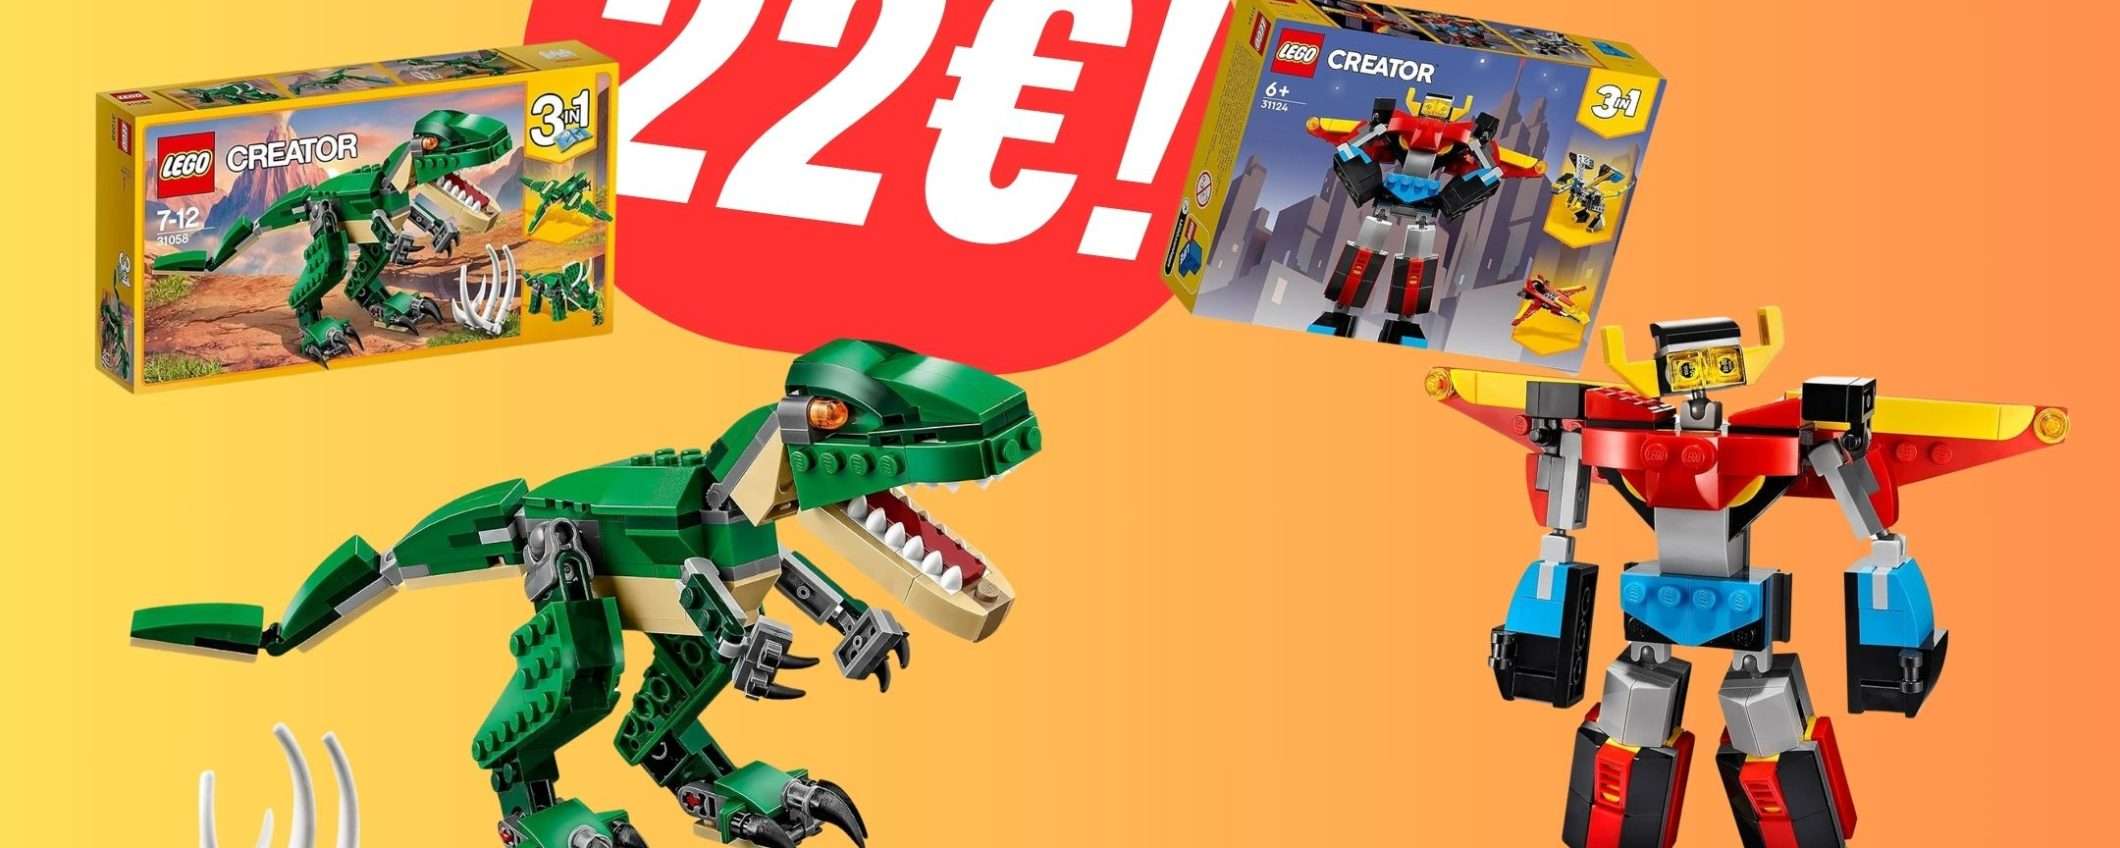 Questi 2 set LEGO costano solo 22€!